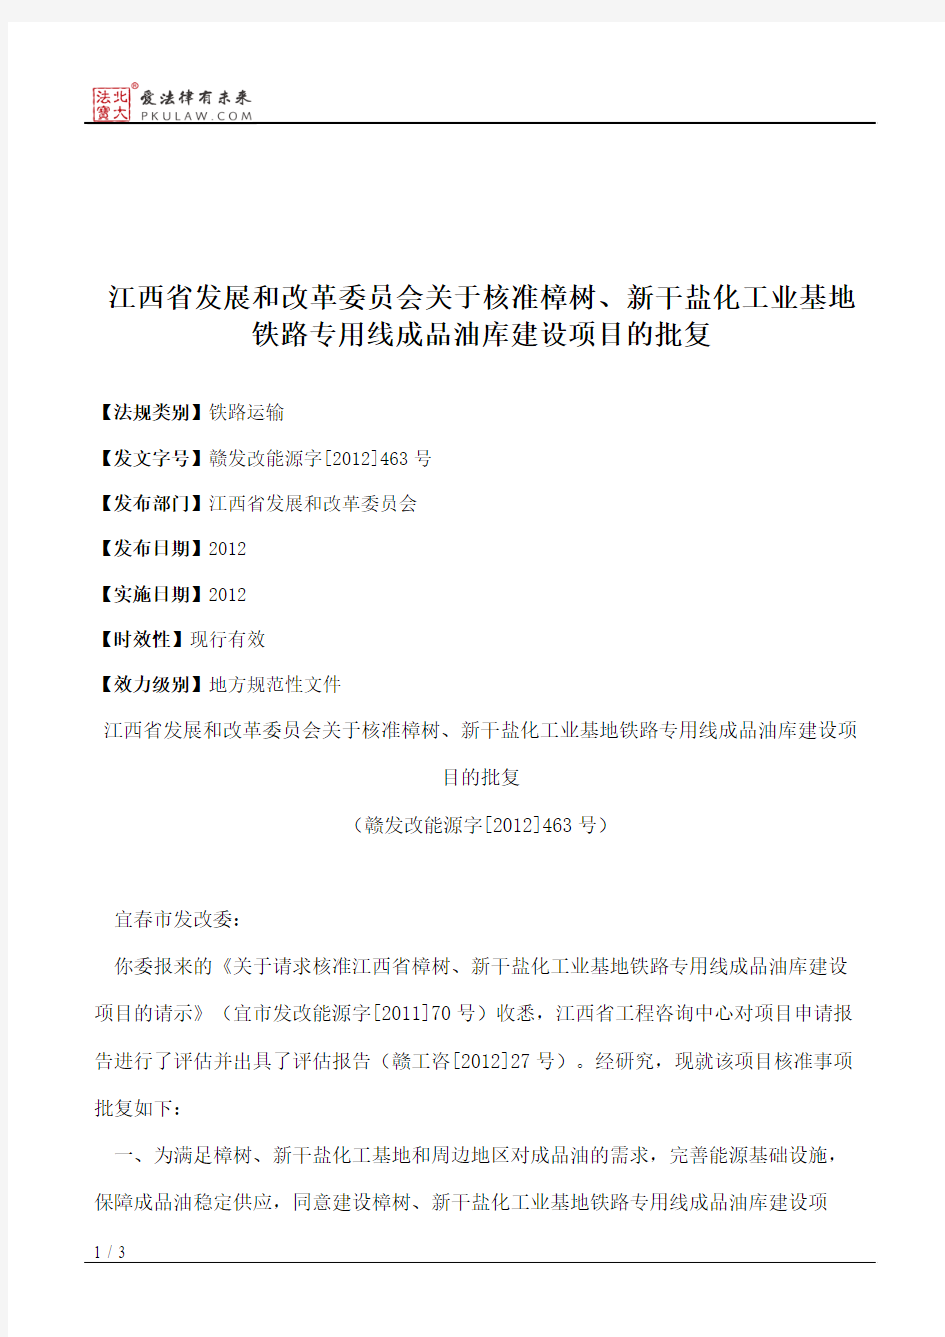 江西省发展和改革委员会关于核准樟树、新干盐化工业基地铁路专用